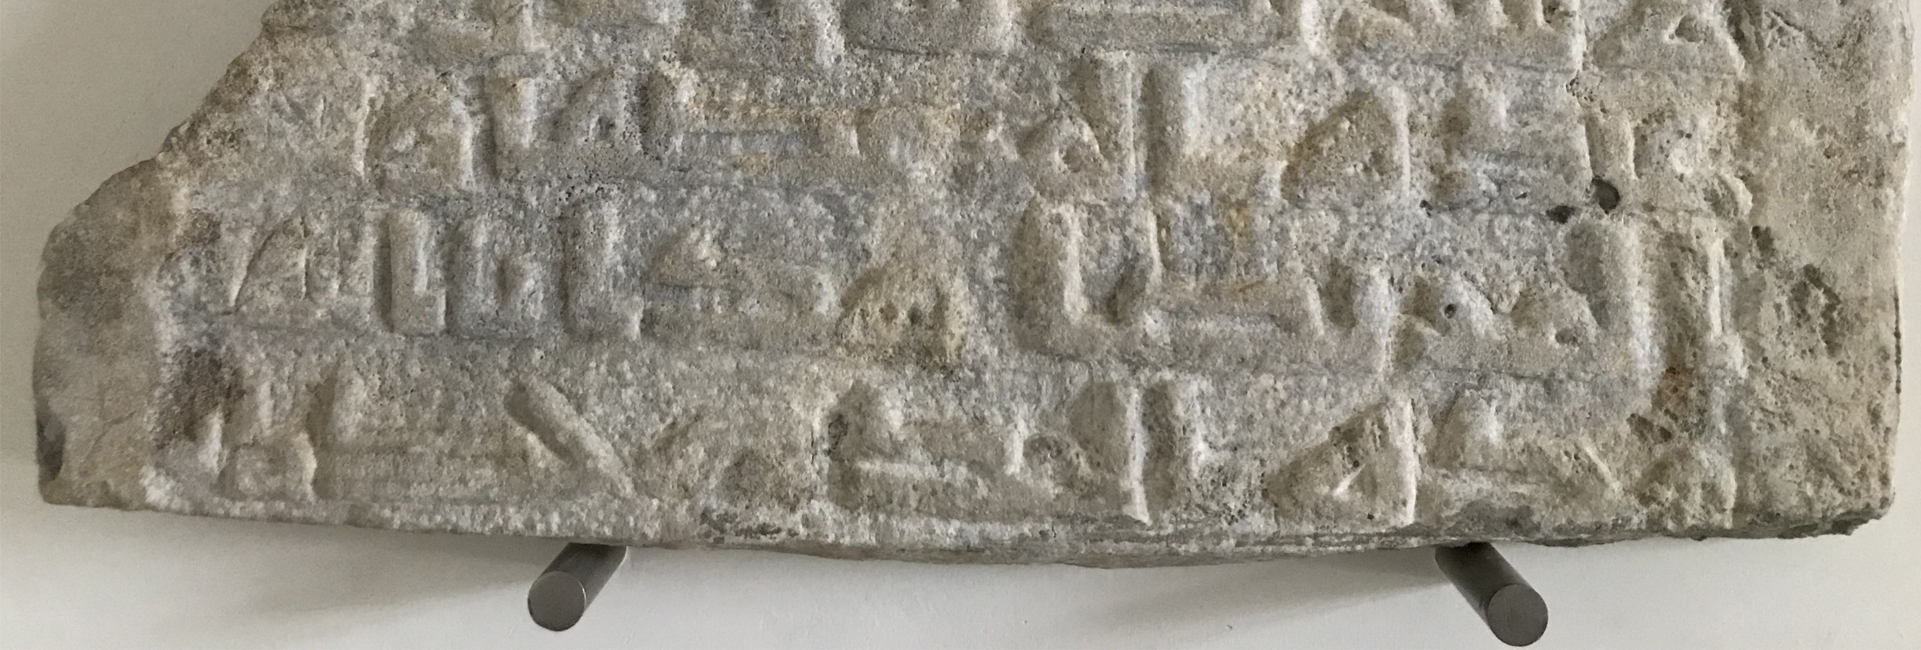 Lápide árabe com dupla inscrição – um achado fortuito | Ciclo «Ver o Museu»